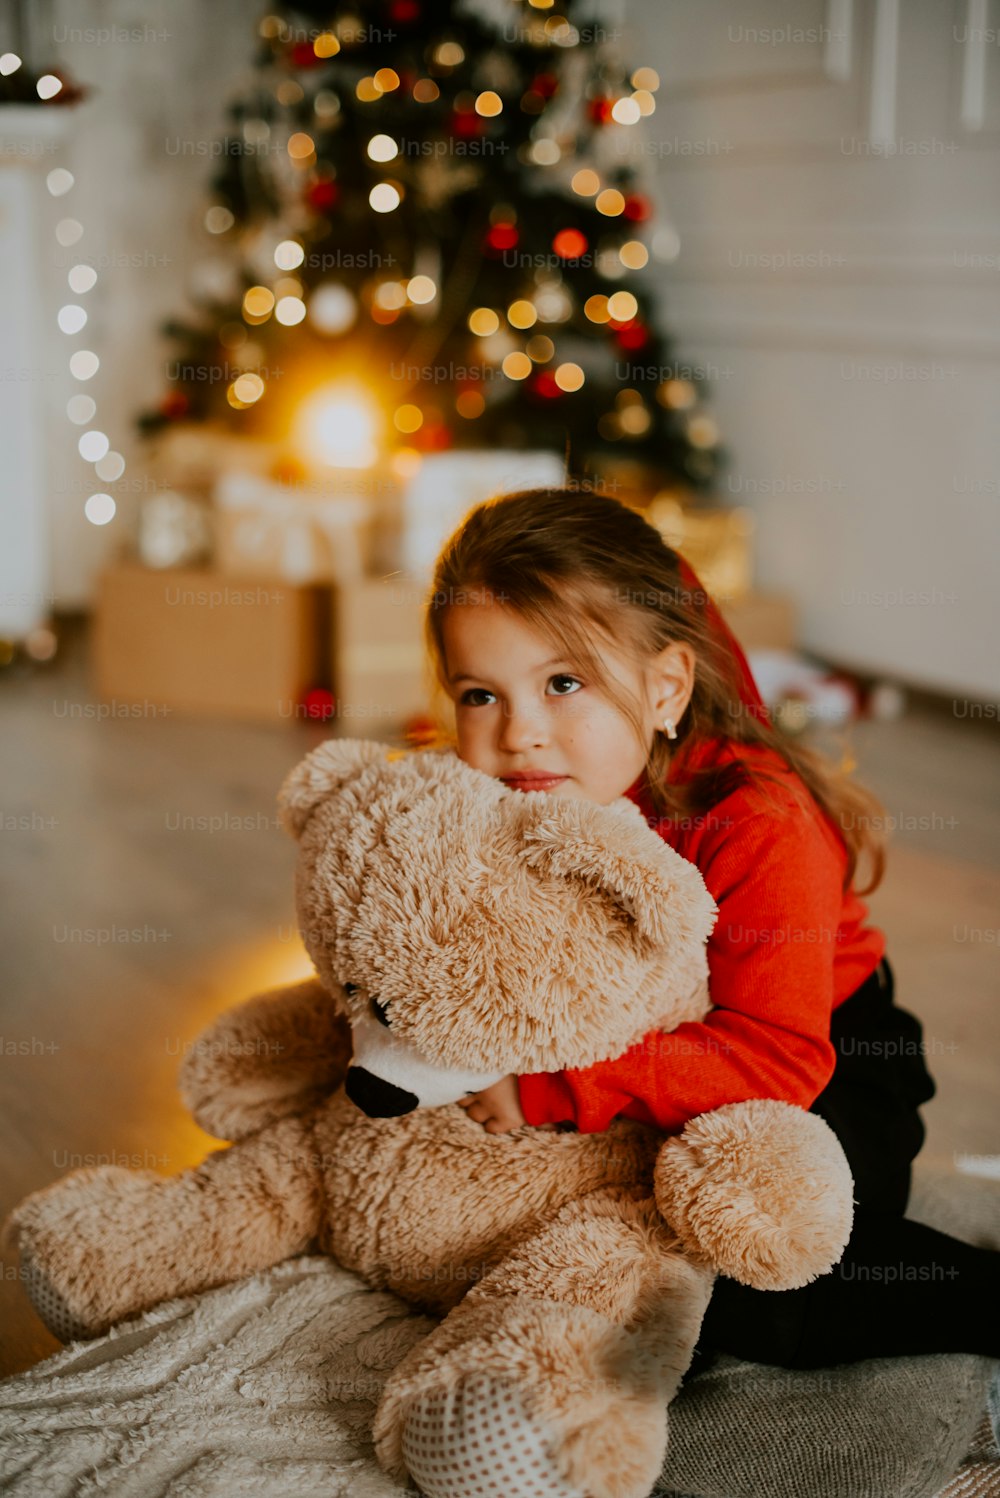 a girl holding a teddy bear